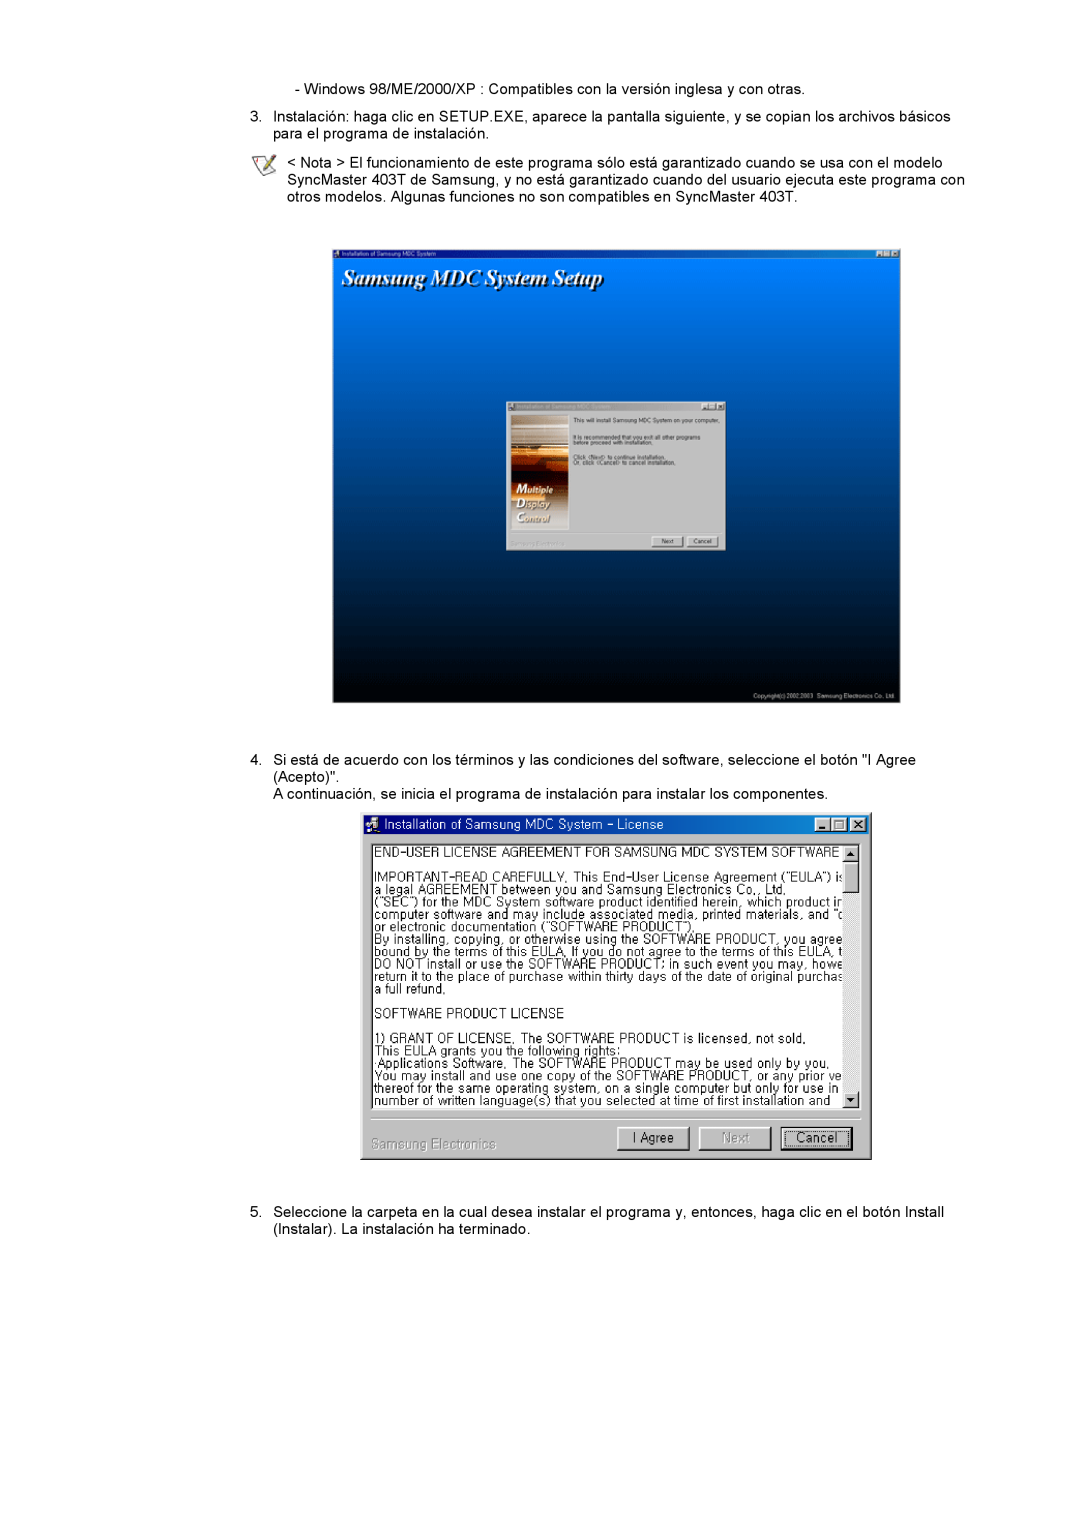 Samsung CK40PSNS/EDC, CK40BSNS/EDC manual Windows 98/ME/2000/XP Compatibles con la versión inglesa y con otras 